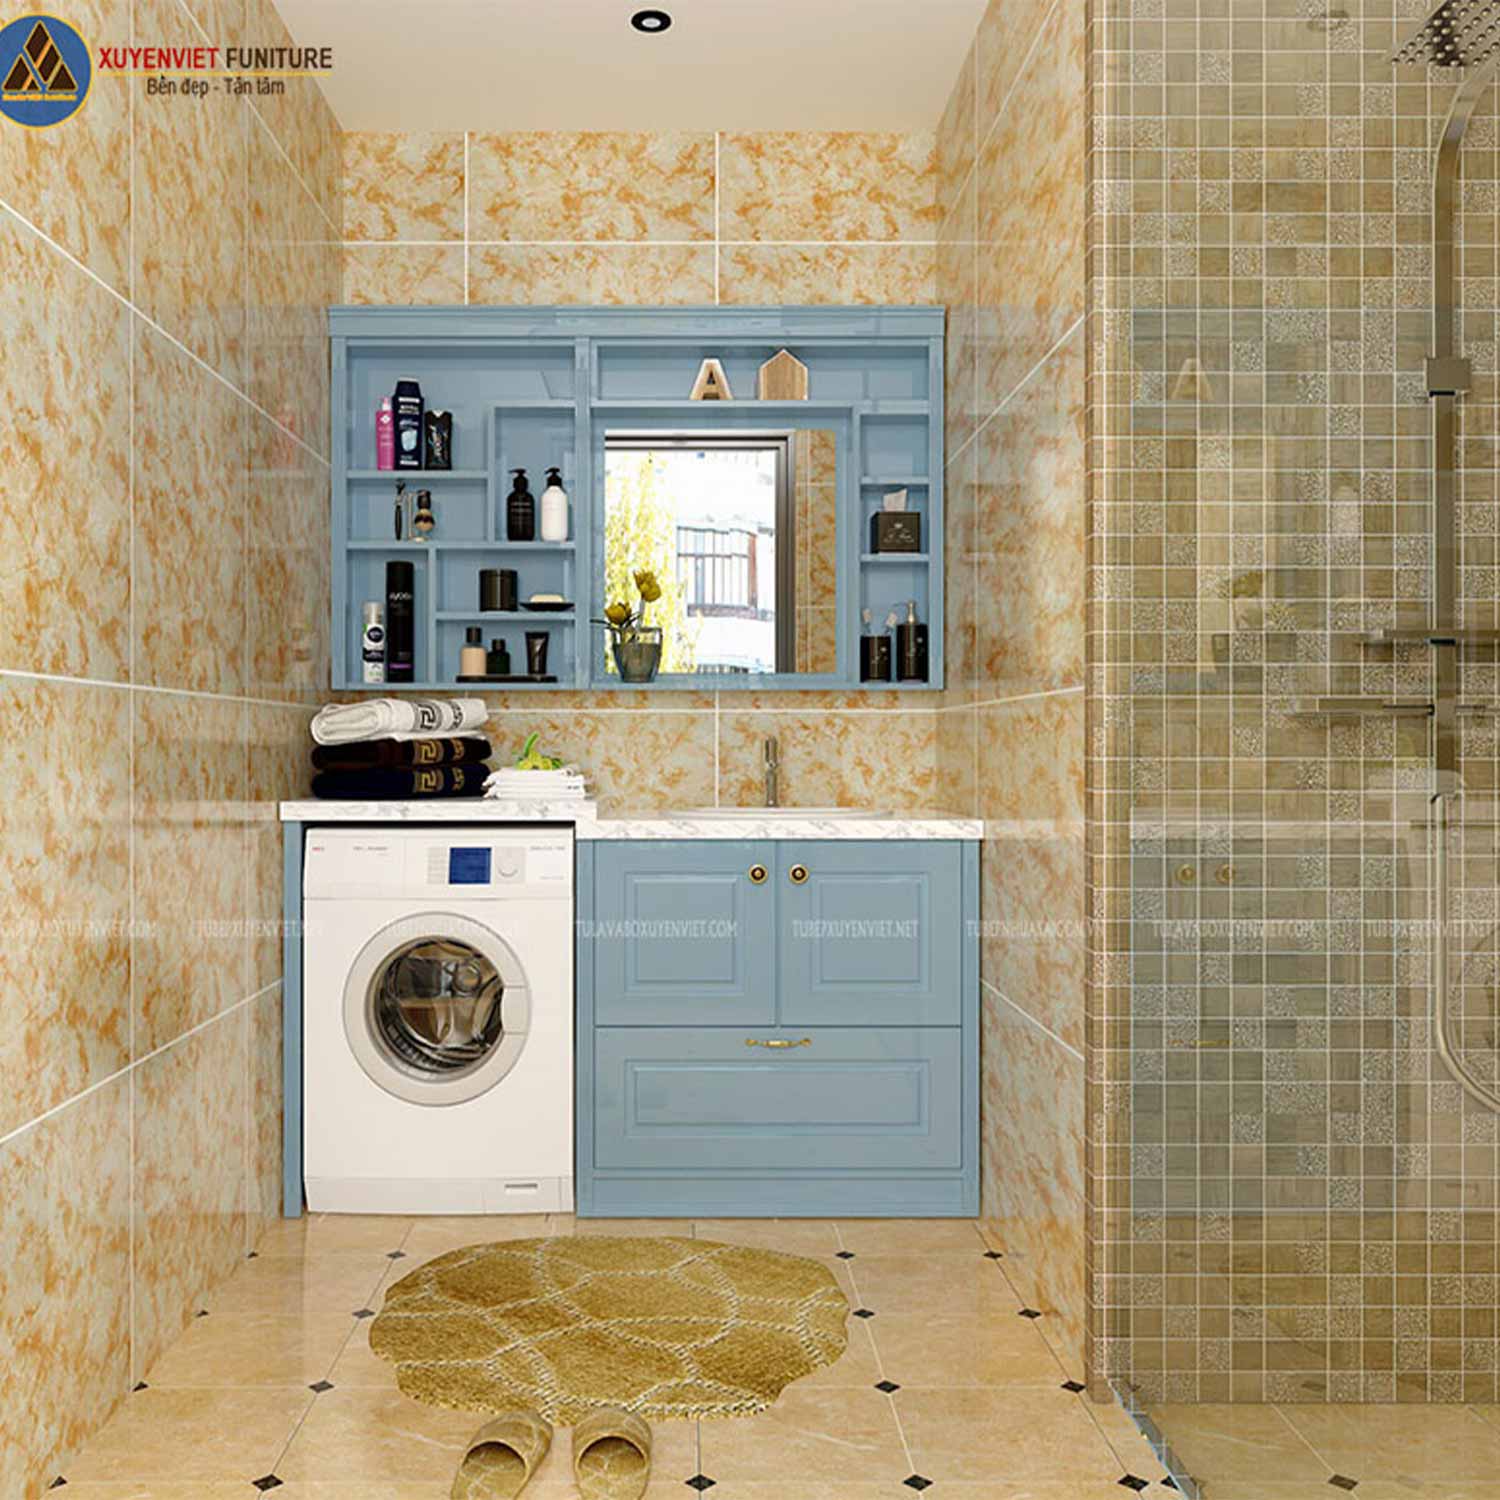 Bộ tủ lavabo cổ điển tông xanh nhẹ nhàng LBK1023 đẳng cấp trong phòng tắm được thể hiện qua hình ảnh 3D